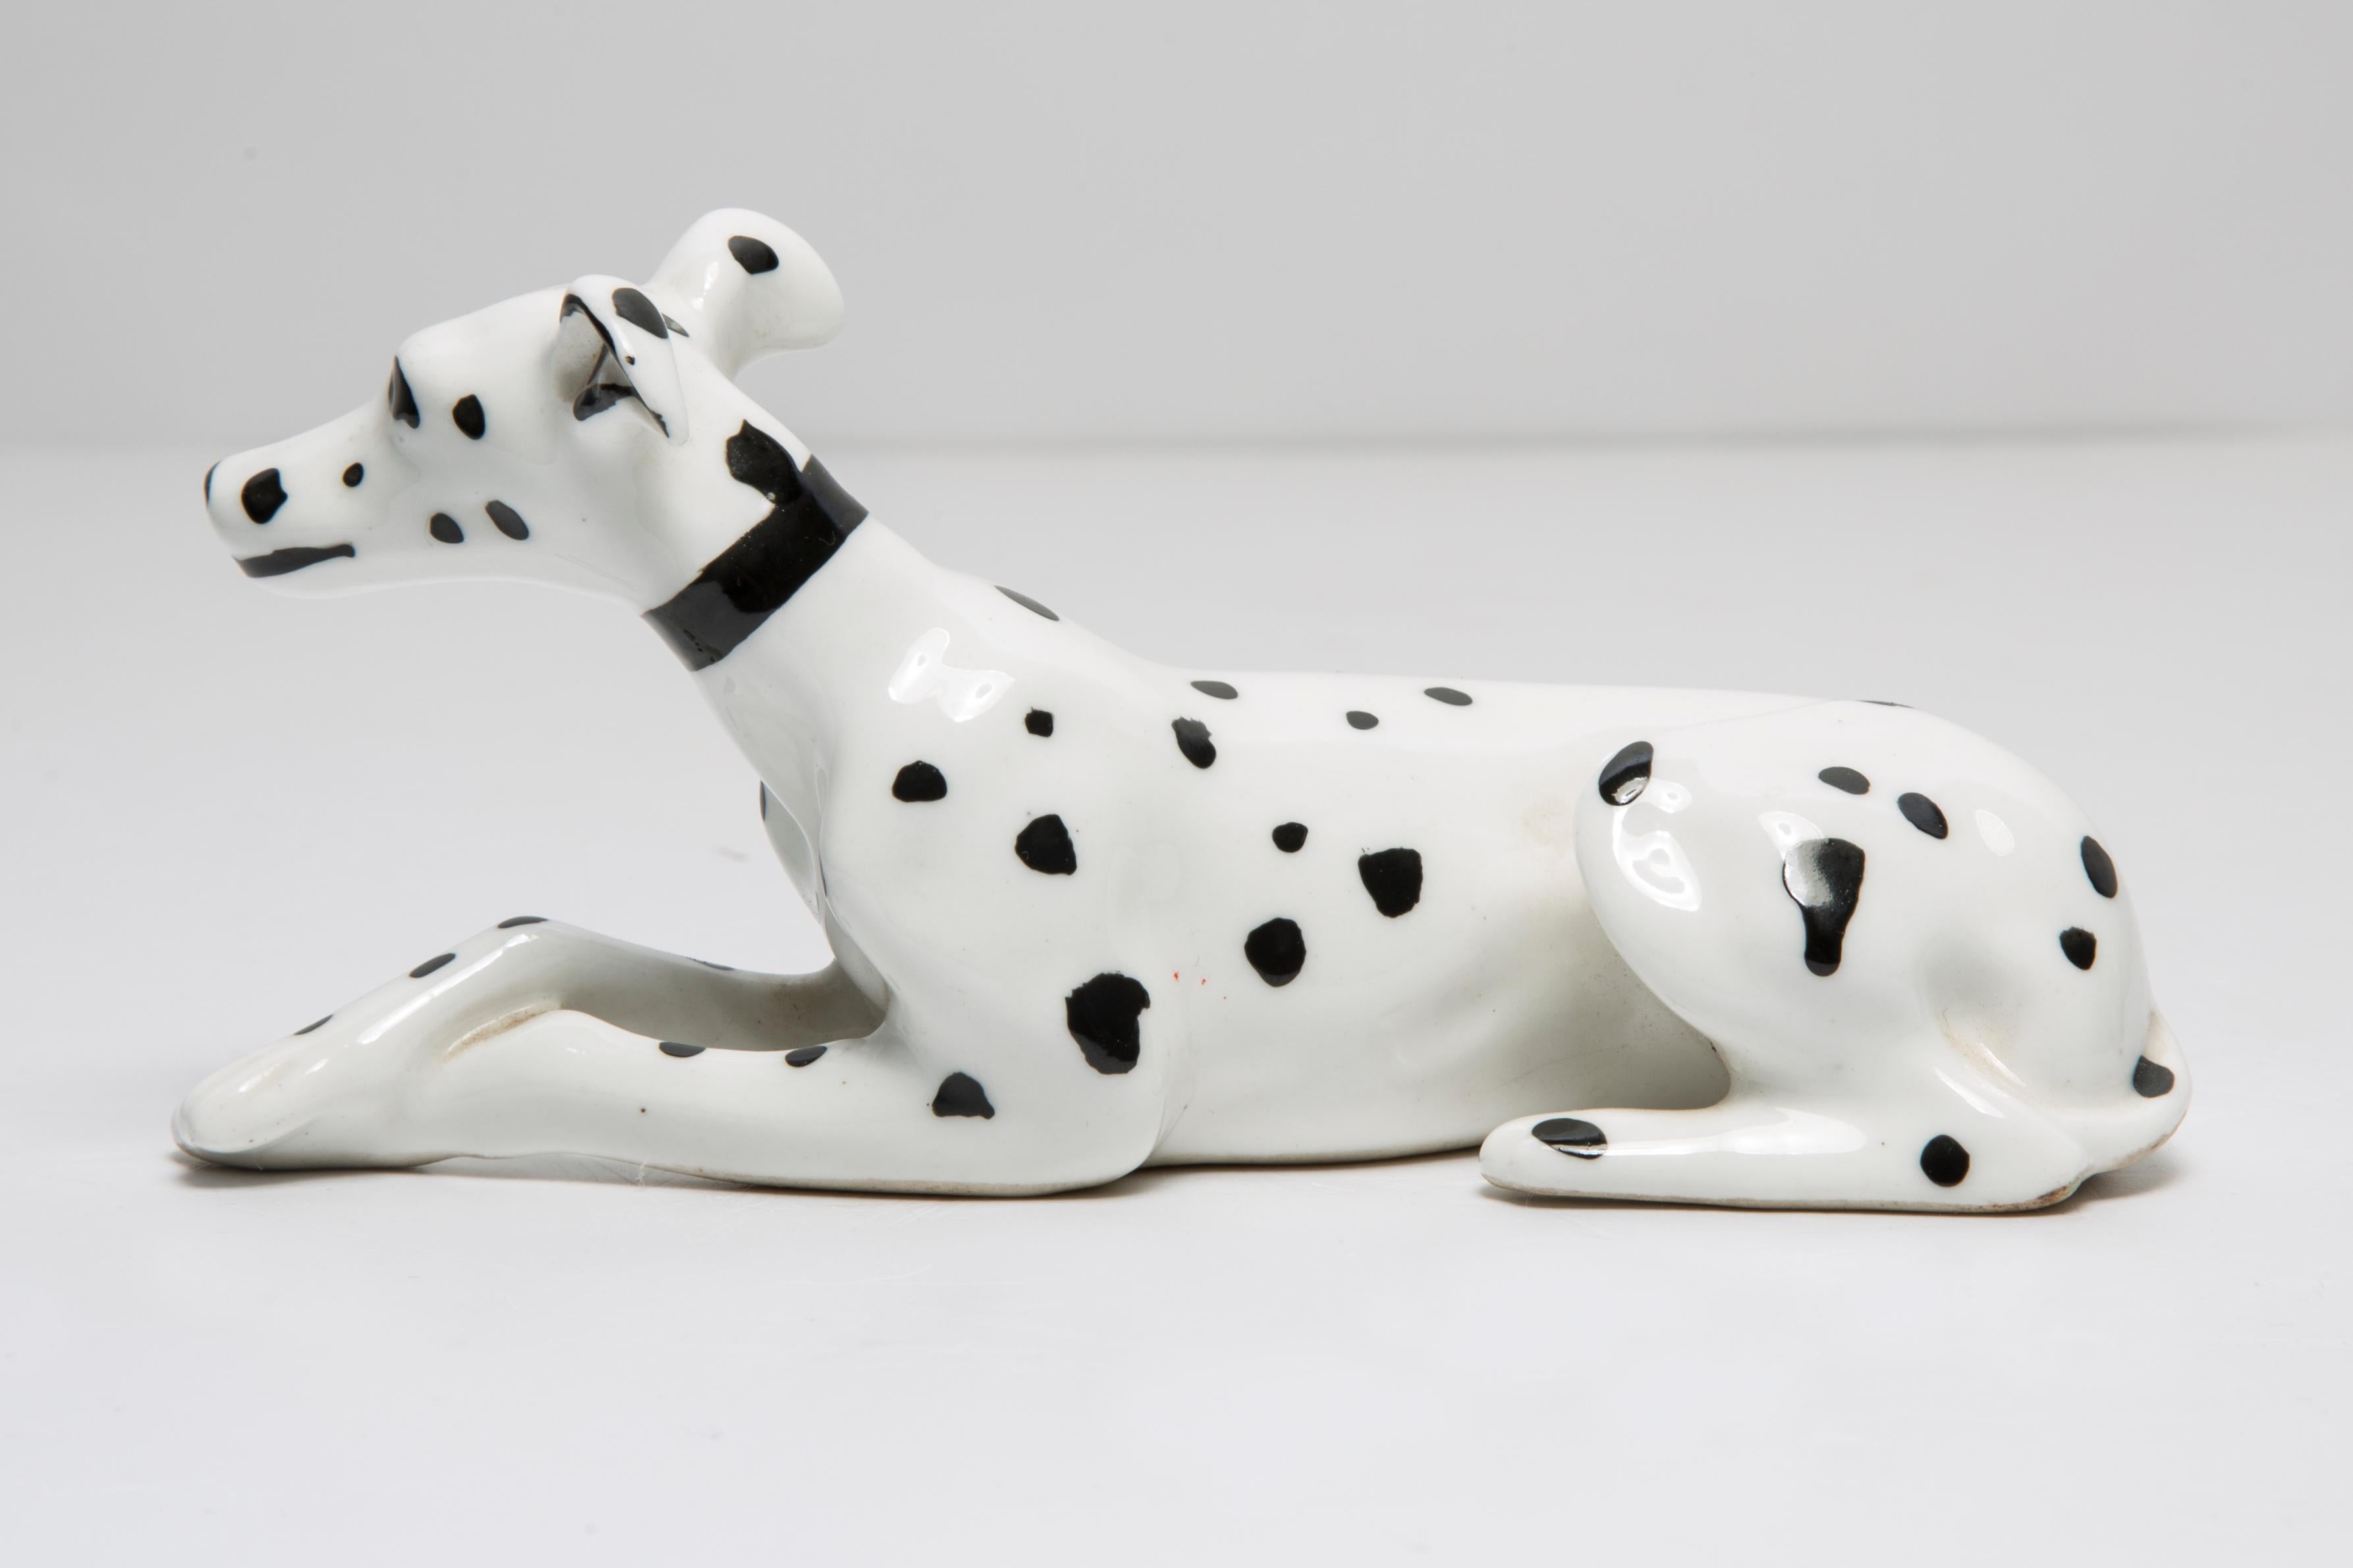 Céramique peinte, très bon état d'origine vintage. Pas de dommages ni de fissures. Belle et unique sculpture décorative. La mini sculpture de chien dalmatien blanc a été produite en Italie. Un seul chien disponible.